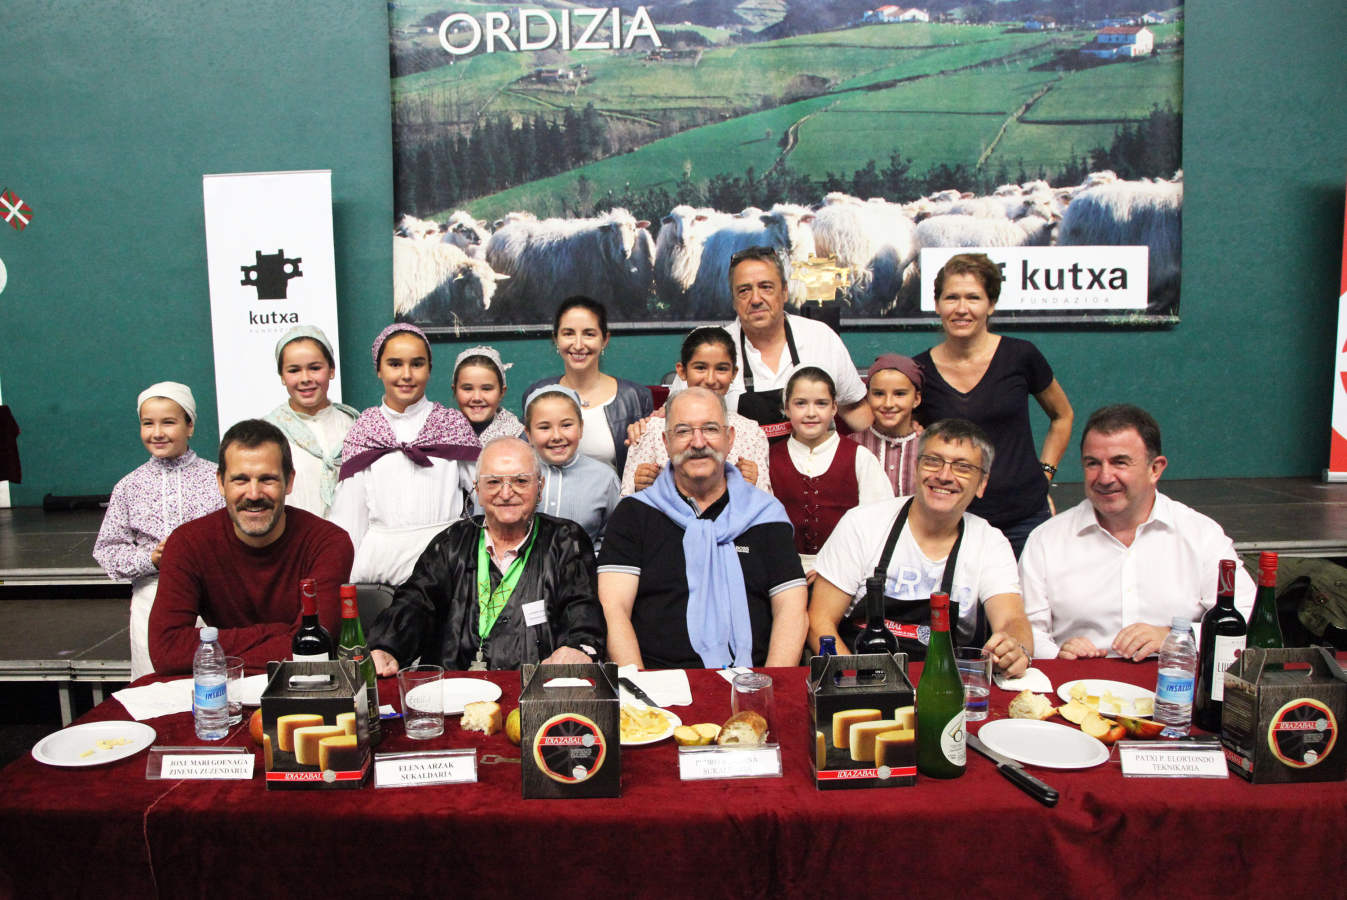 8.750 euros es lo que se ha pagado por el medio queso ganador de Ordizia. La localidad del Goierri ha acogido el tradicional concurso de queso Idiazabal